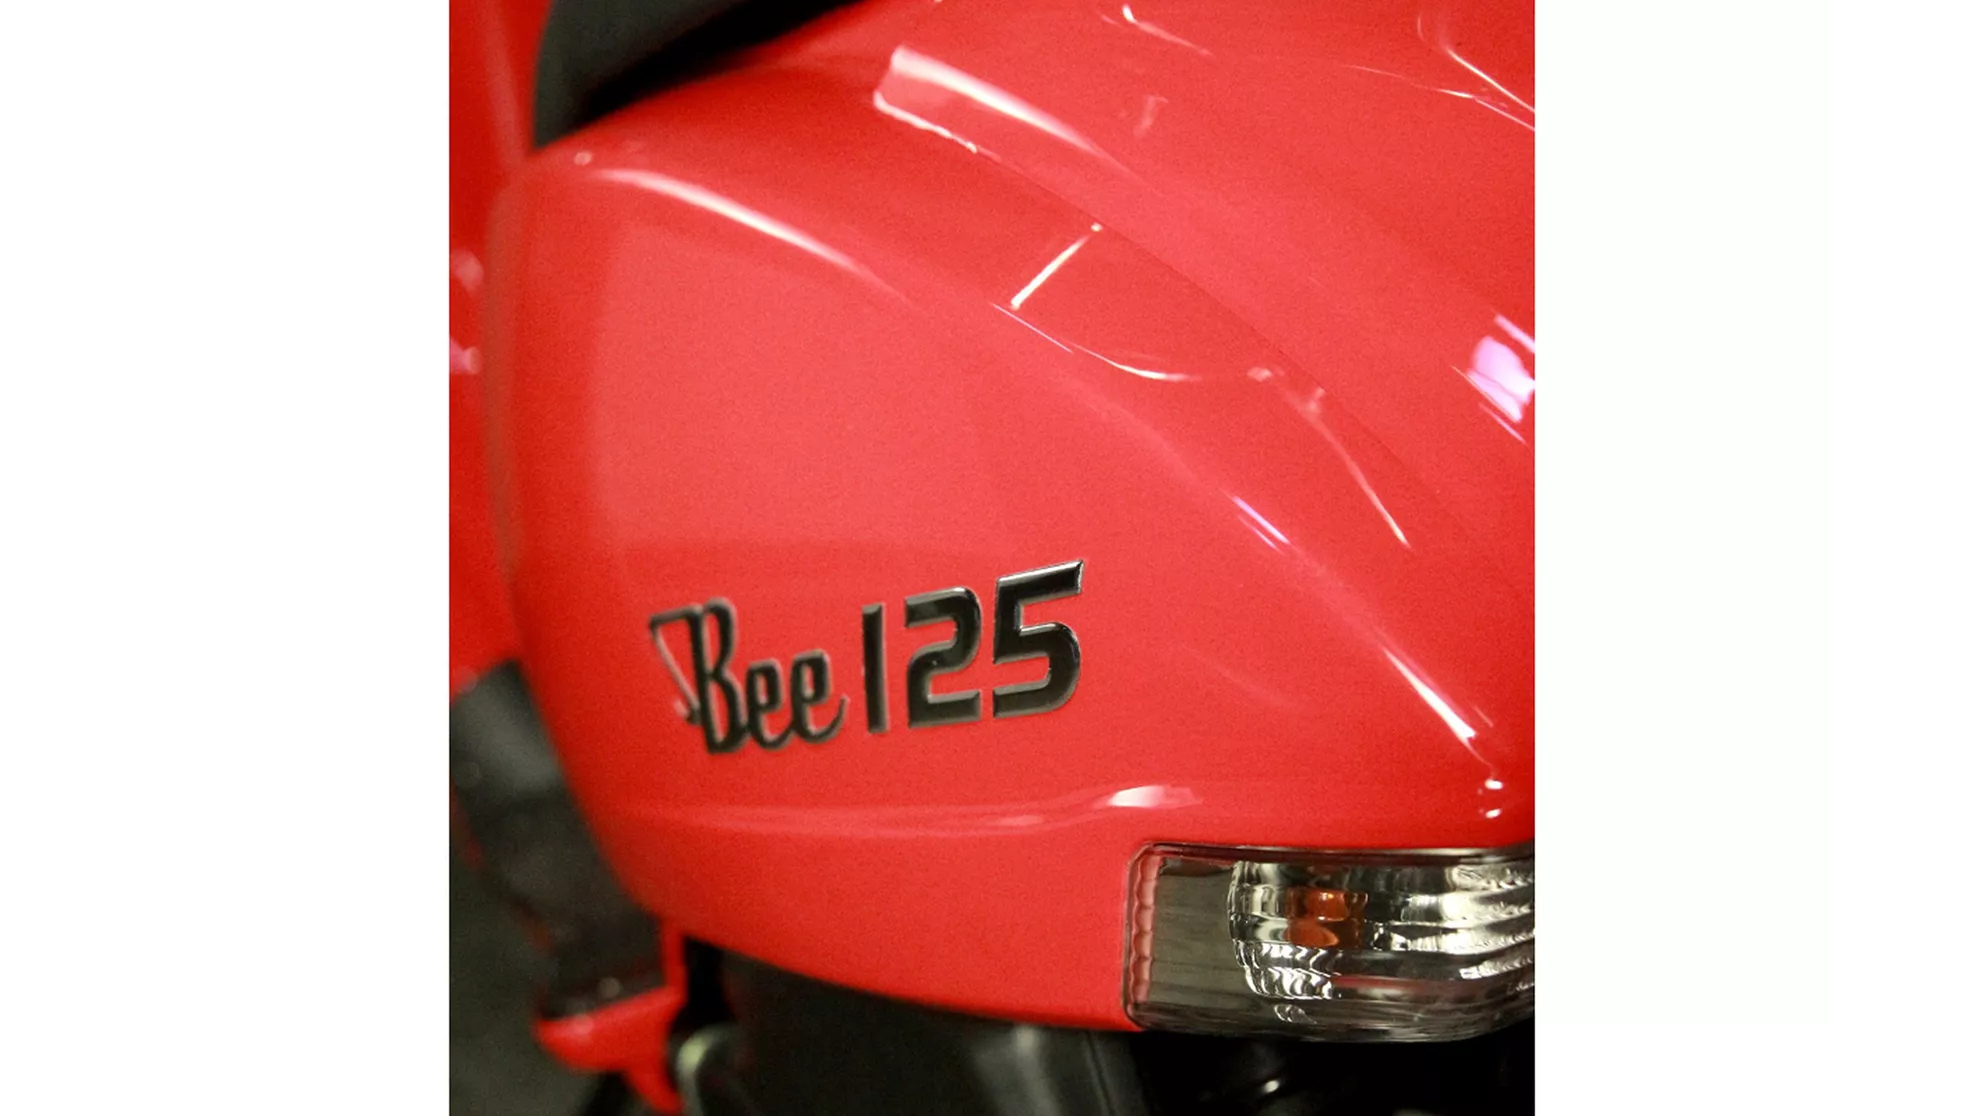 Sachs Bee 125 - Image 3